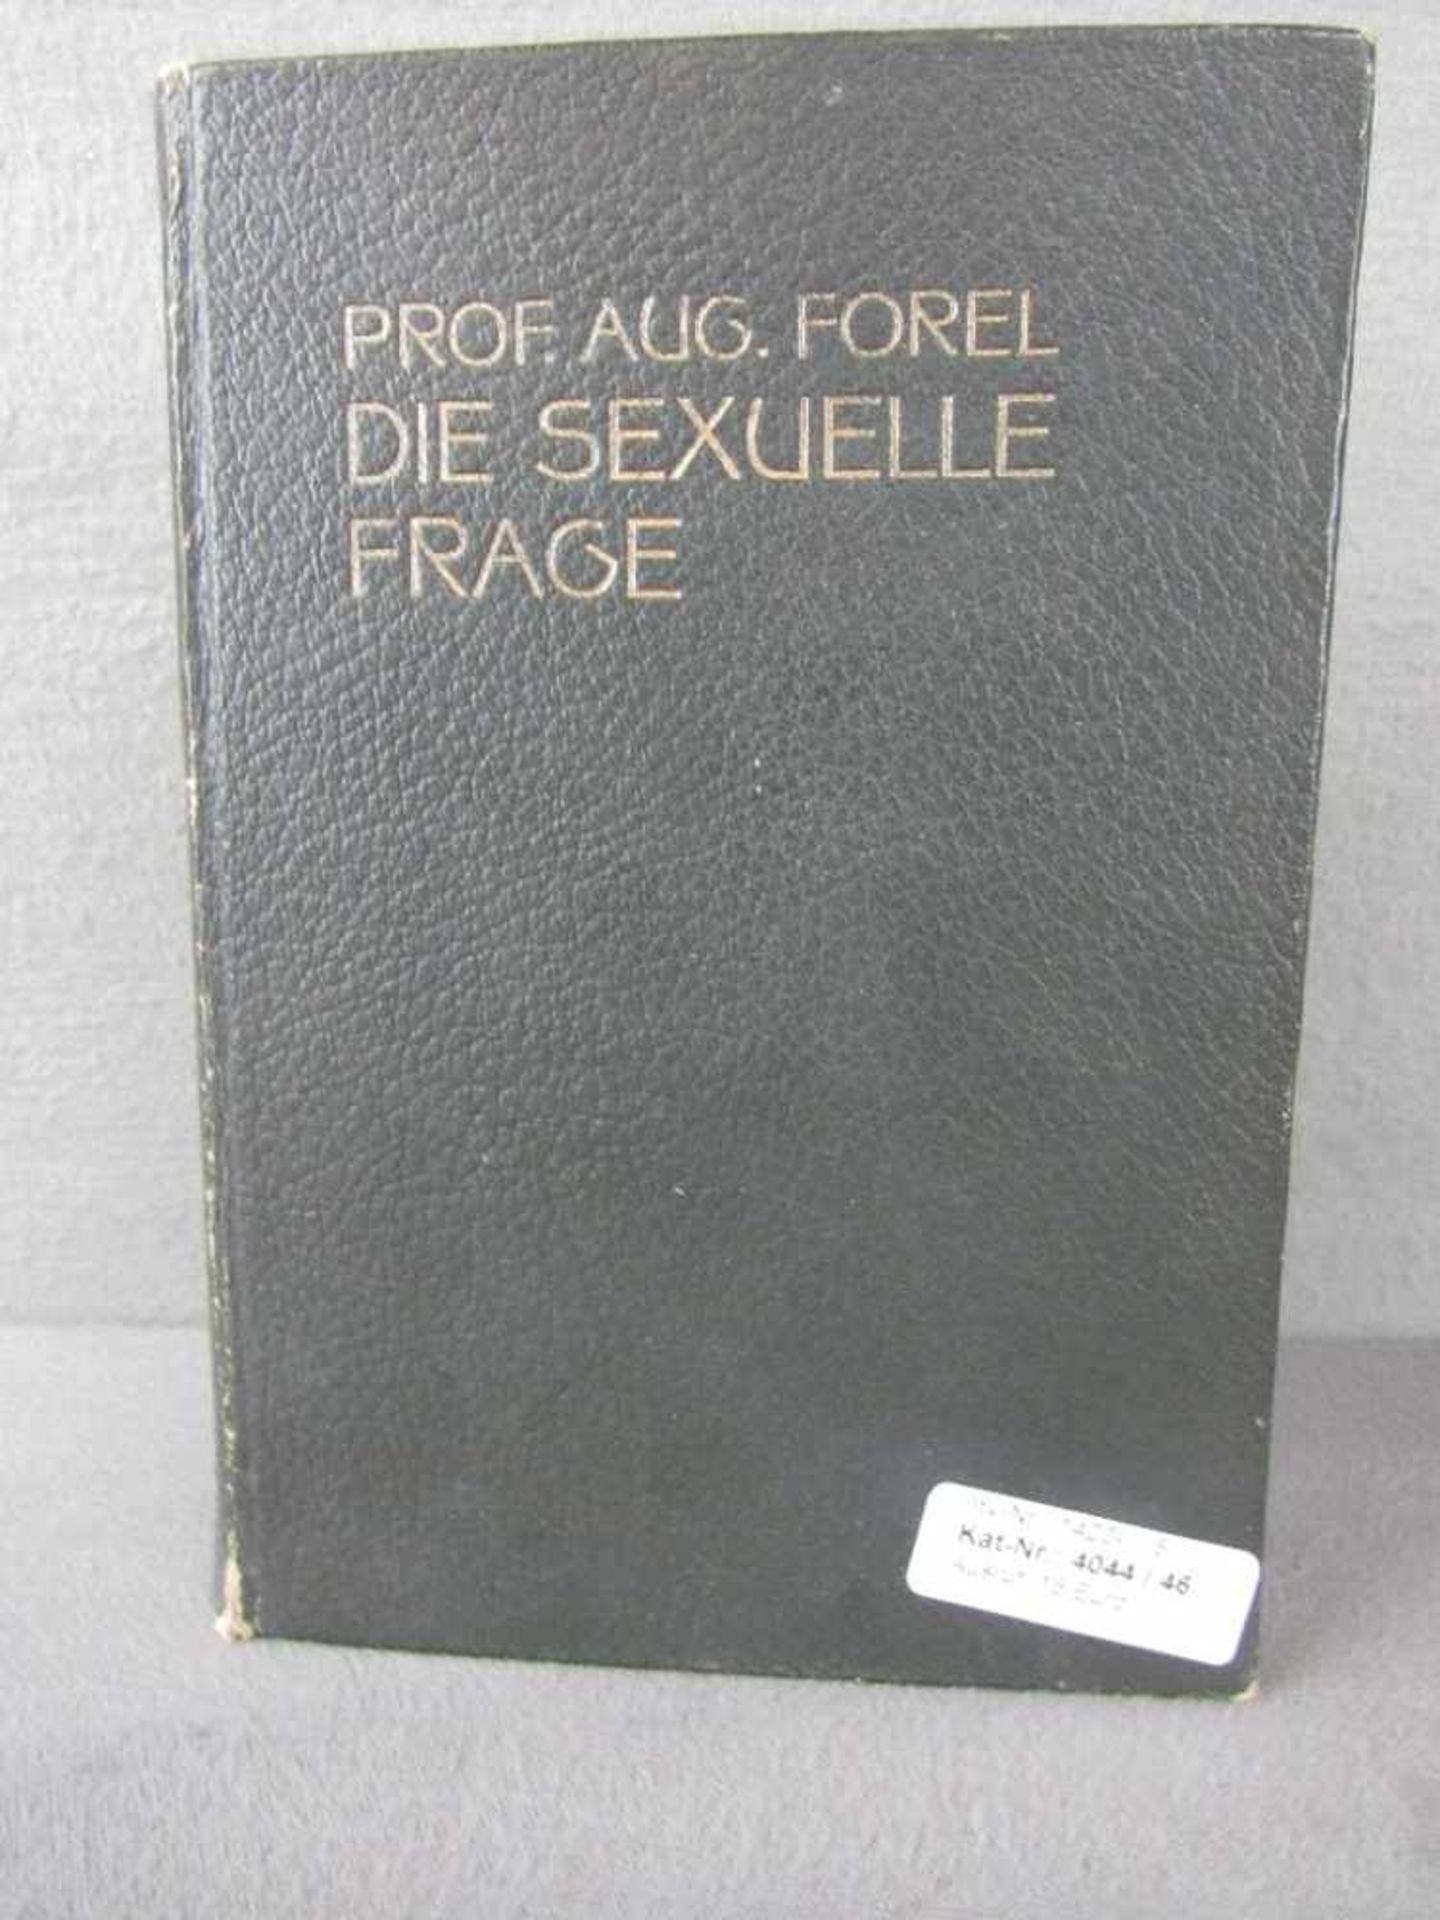 Buch " Die sexuelle Frage" von Prof. A. Forel 1904 sehr seltenes Thema in der Zeit mehr als 600